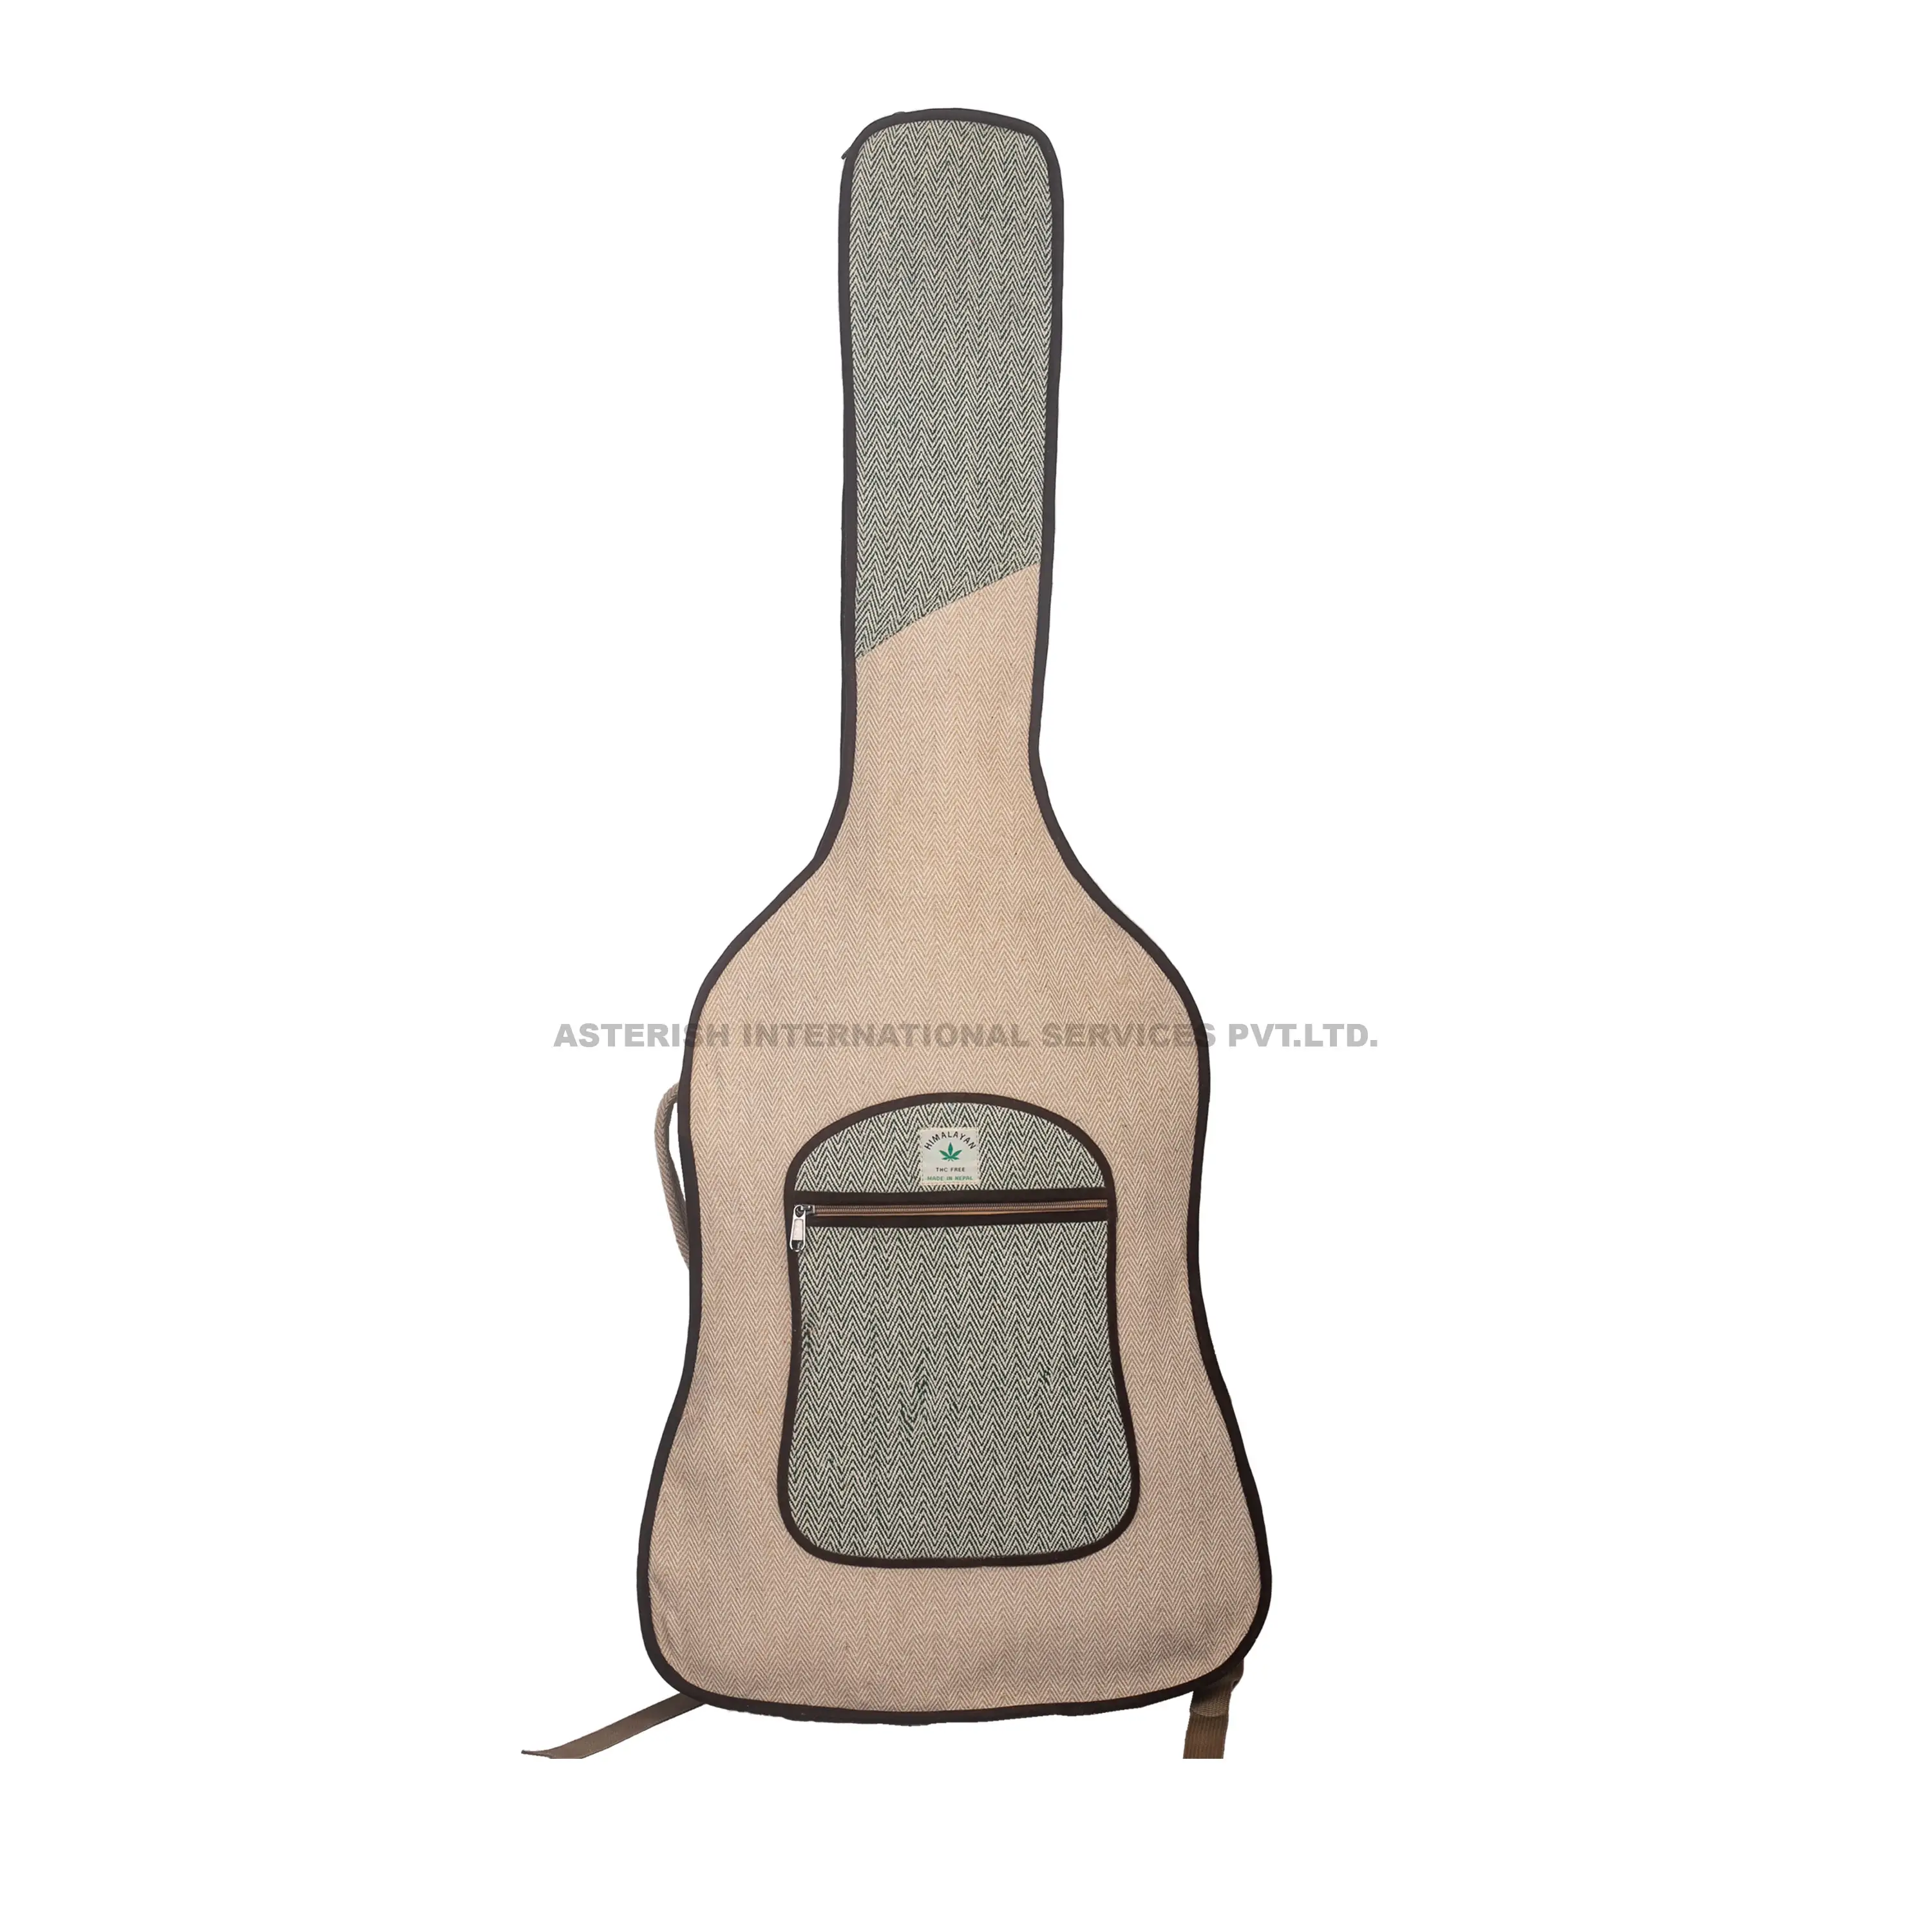 빈티지 OEM 기타 케이스 가방 캐리 핸들 공장 만든 대마 기타 배낭 패션 일렉트릭 기타 가방